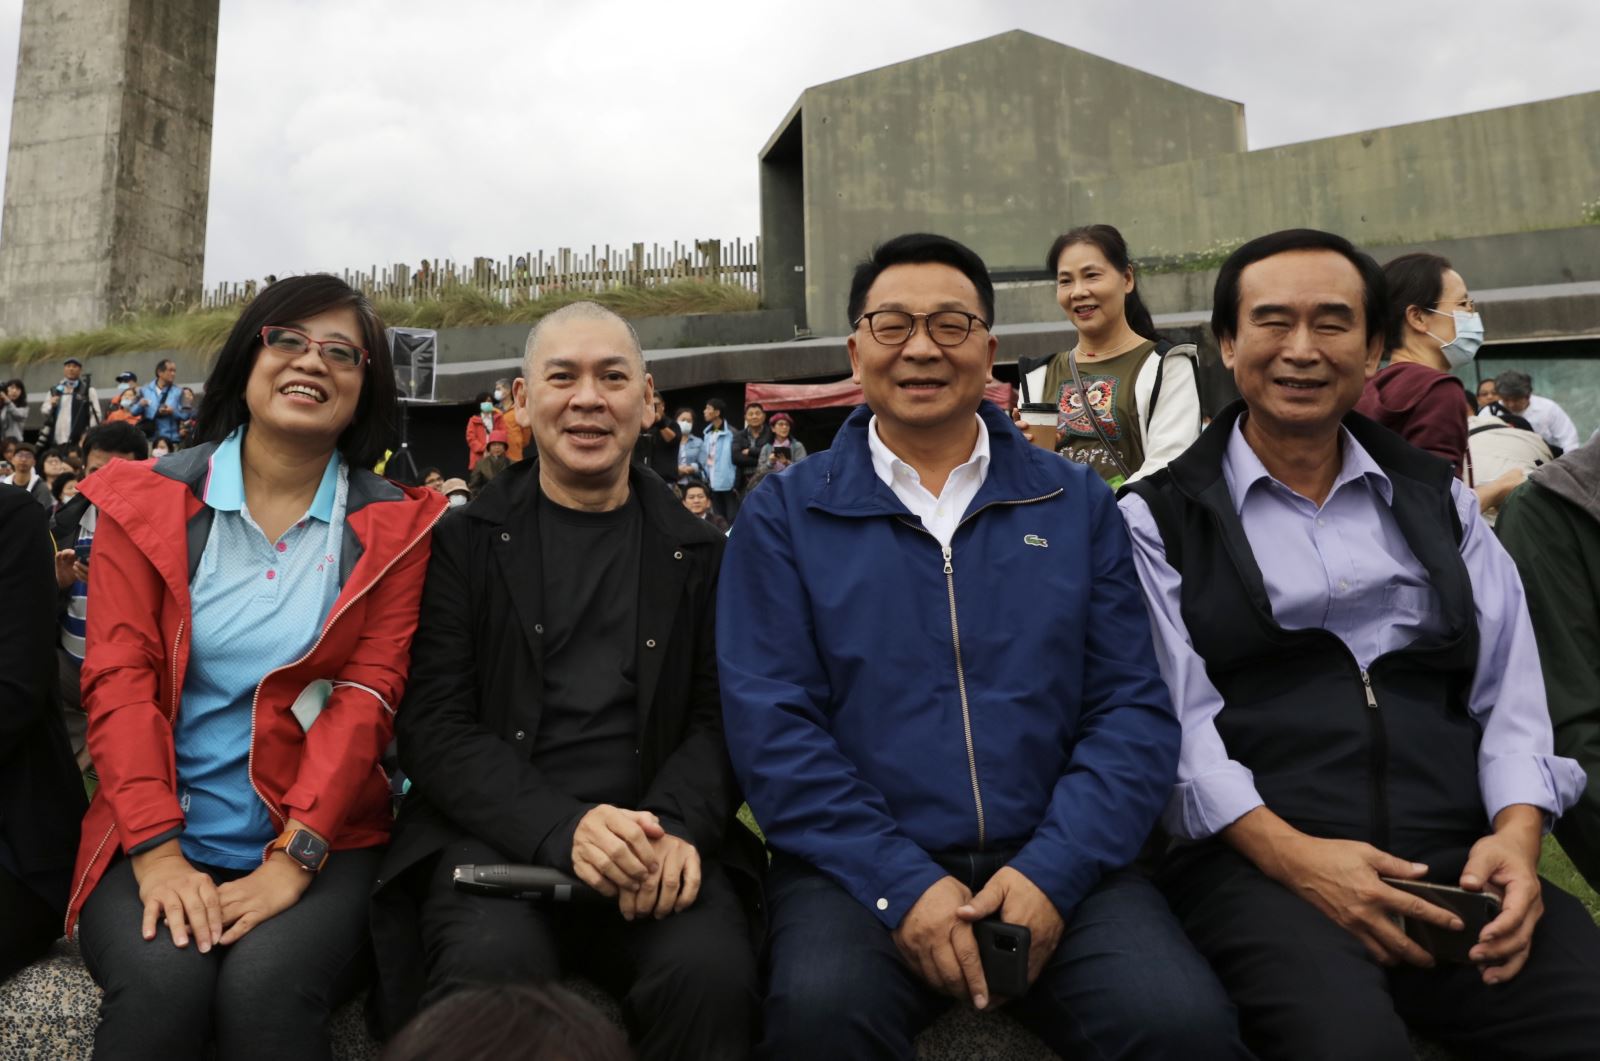 ผู้กำกับ Chen Meixiu และผู้กำกับ Cai Mingliang ถ่ายรูปหมู่กับ Chen Liwei, Opal Shen Xiang, Changqingshan